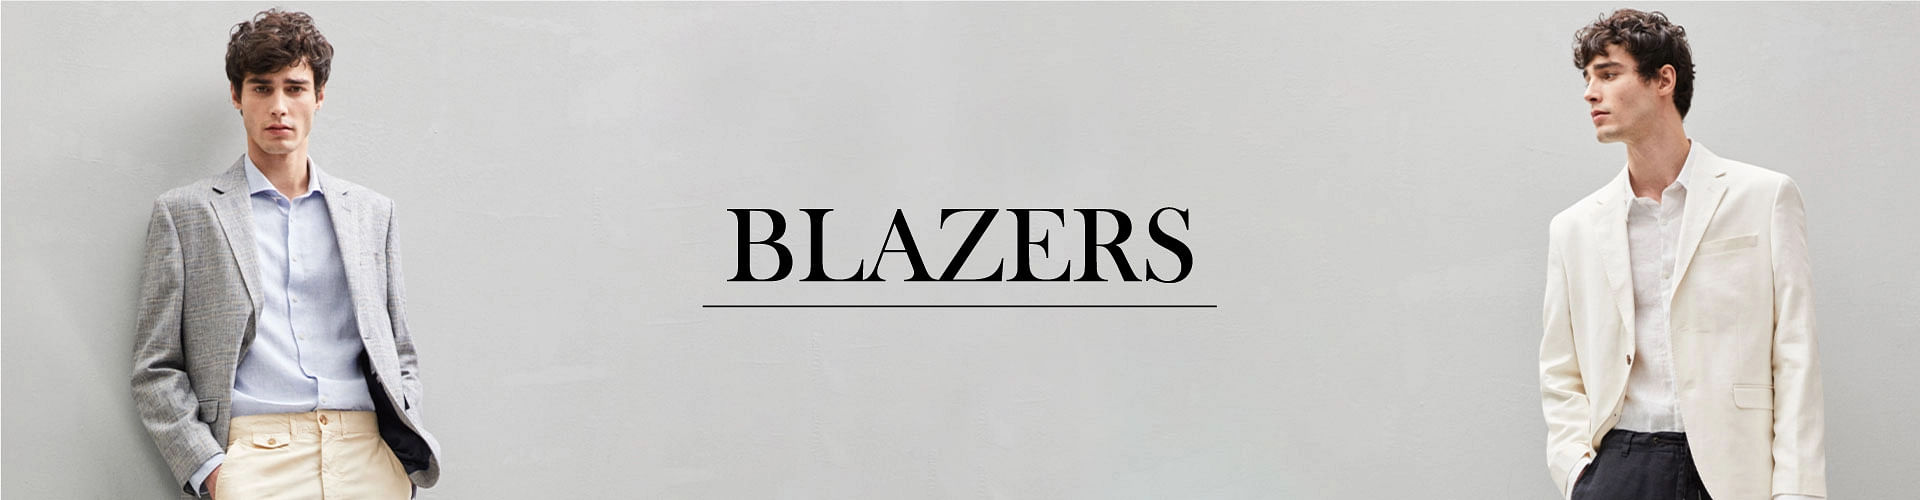 Blazers for men